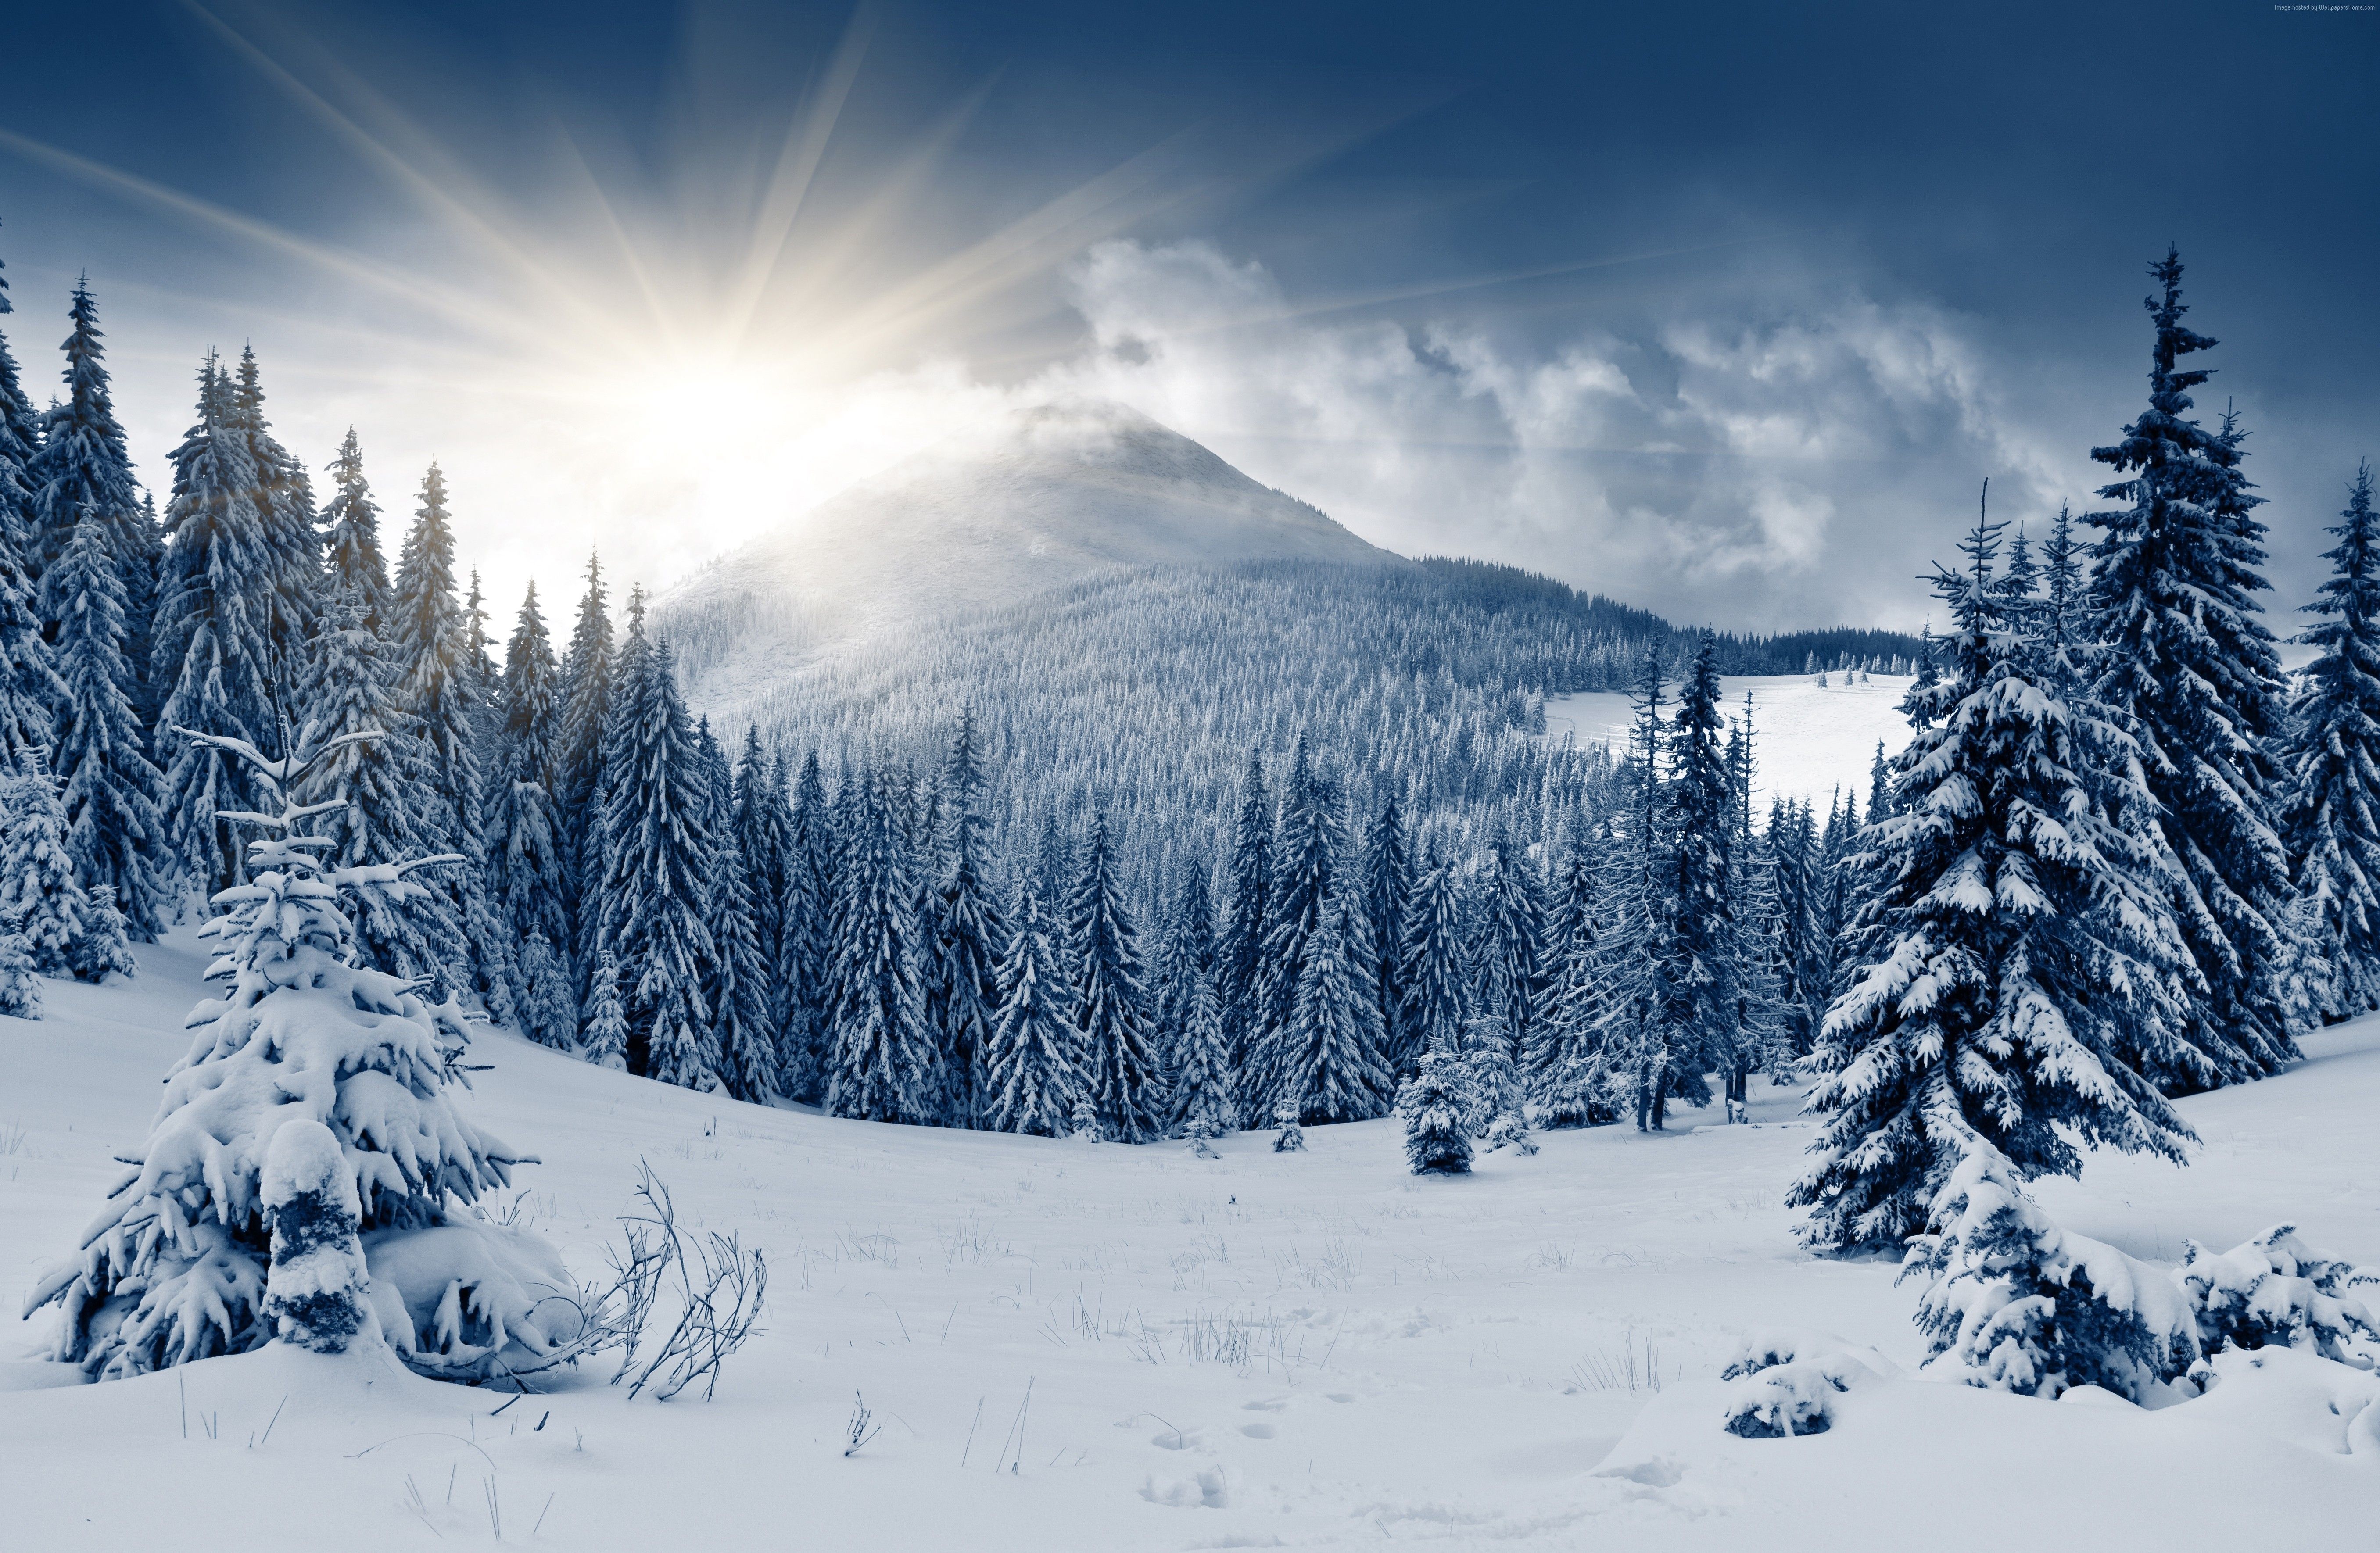 Winter Forest Wallpaper, Nature / Forest: Winter Forest, Mountain, Sun, Snow, Fir Trees. Winter Forest, Winter Landscape, Forest Landscape